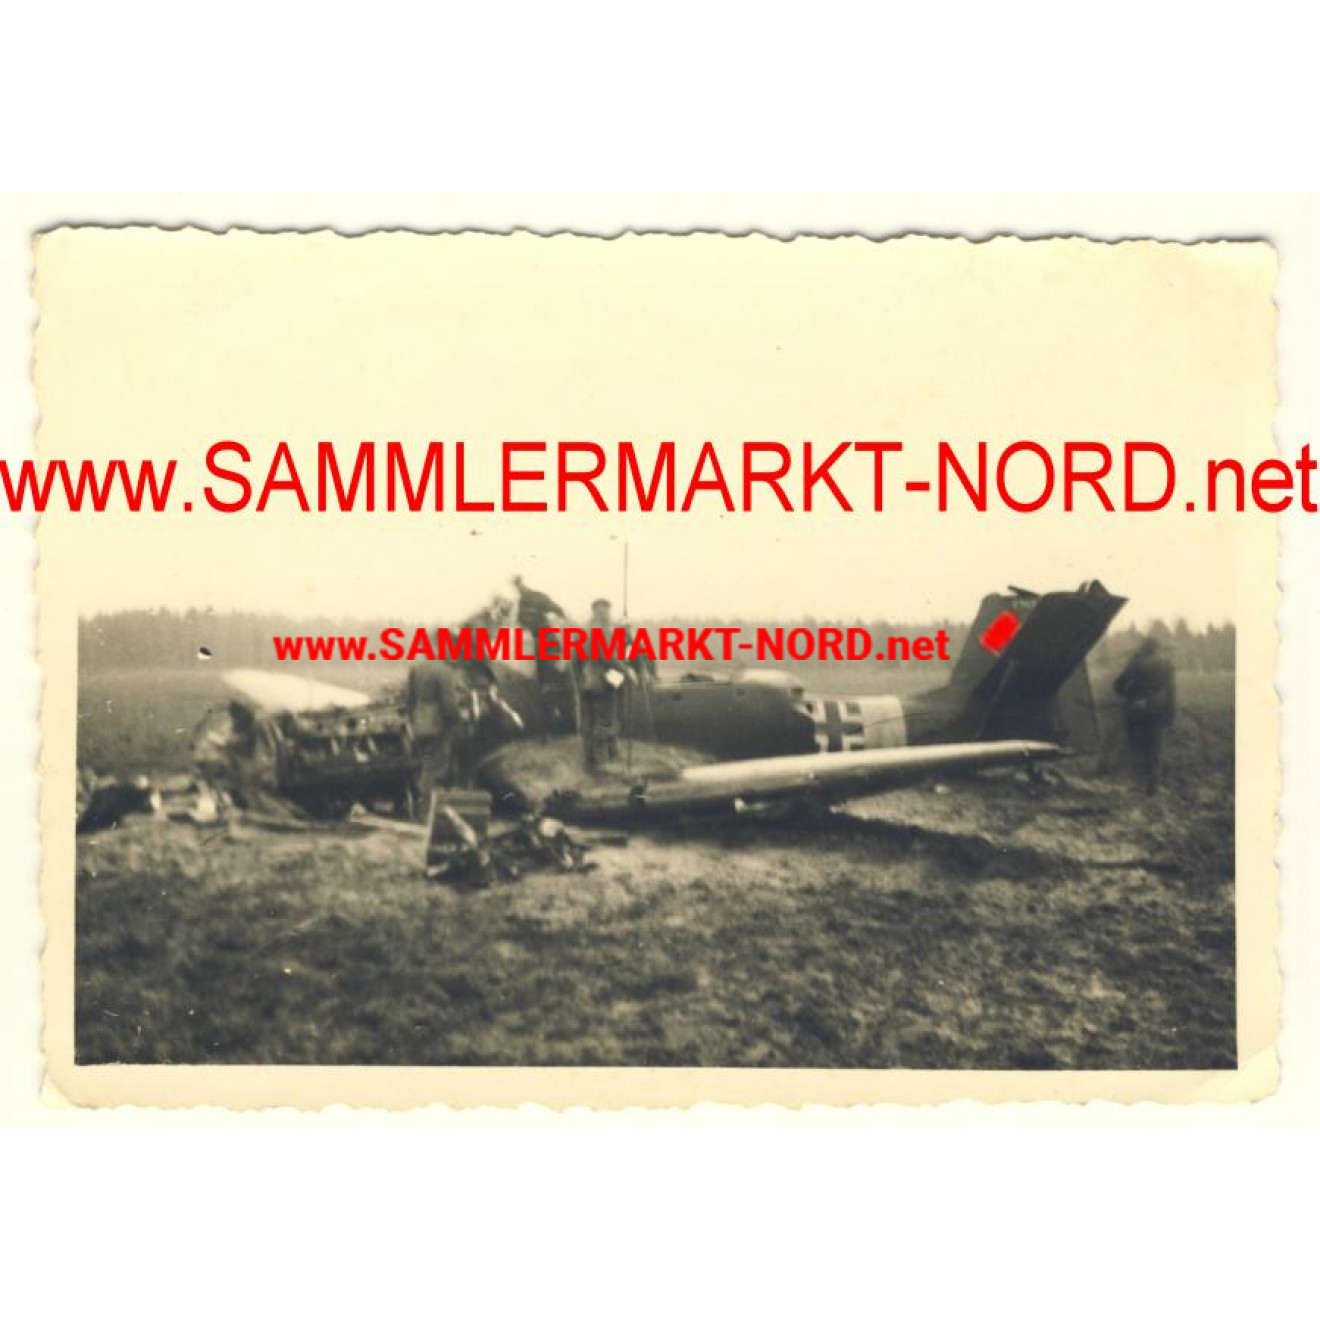 Destroyed german airplane Ju 87